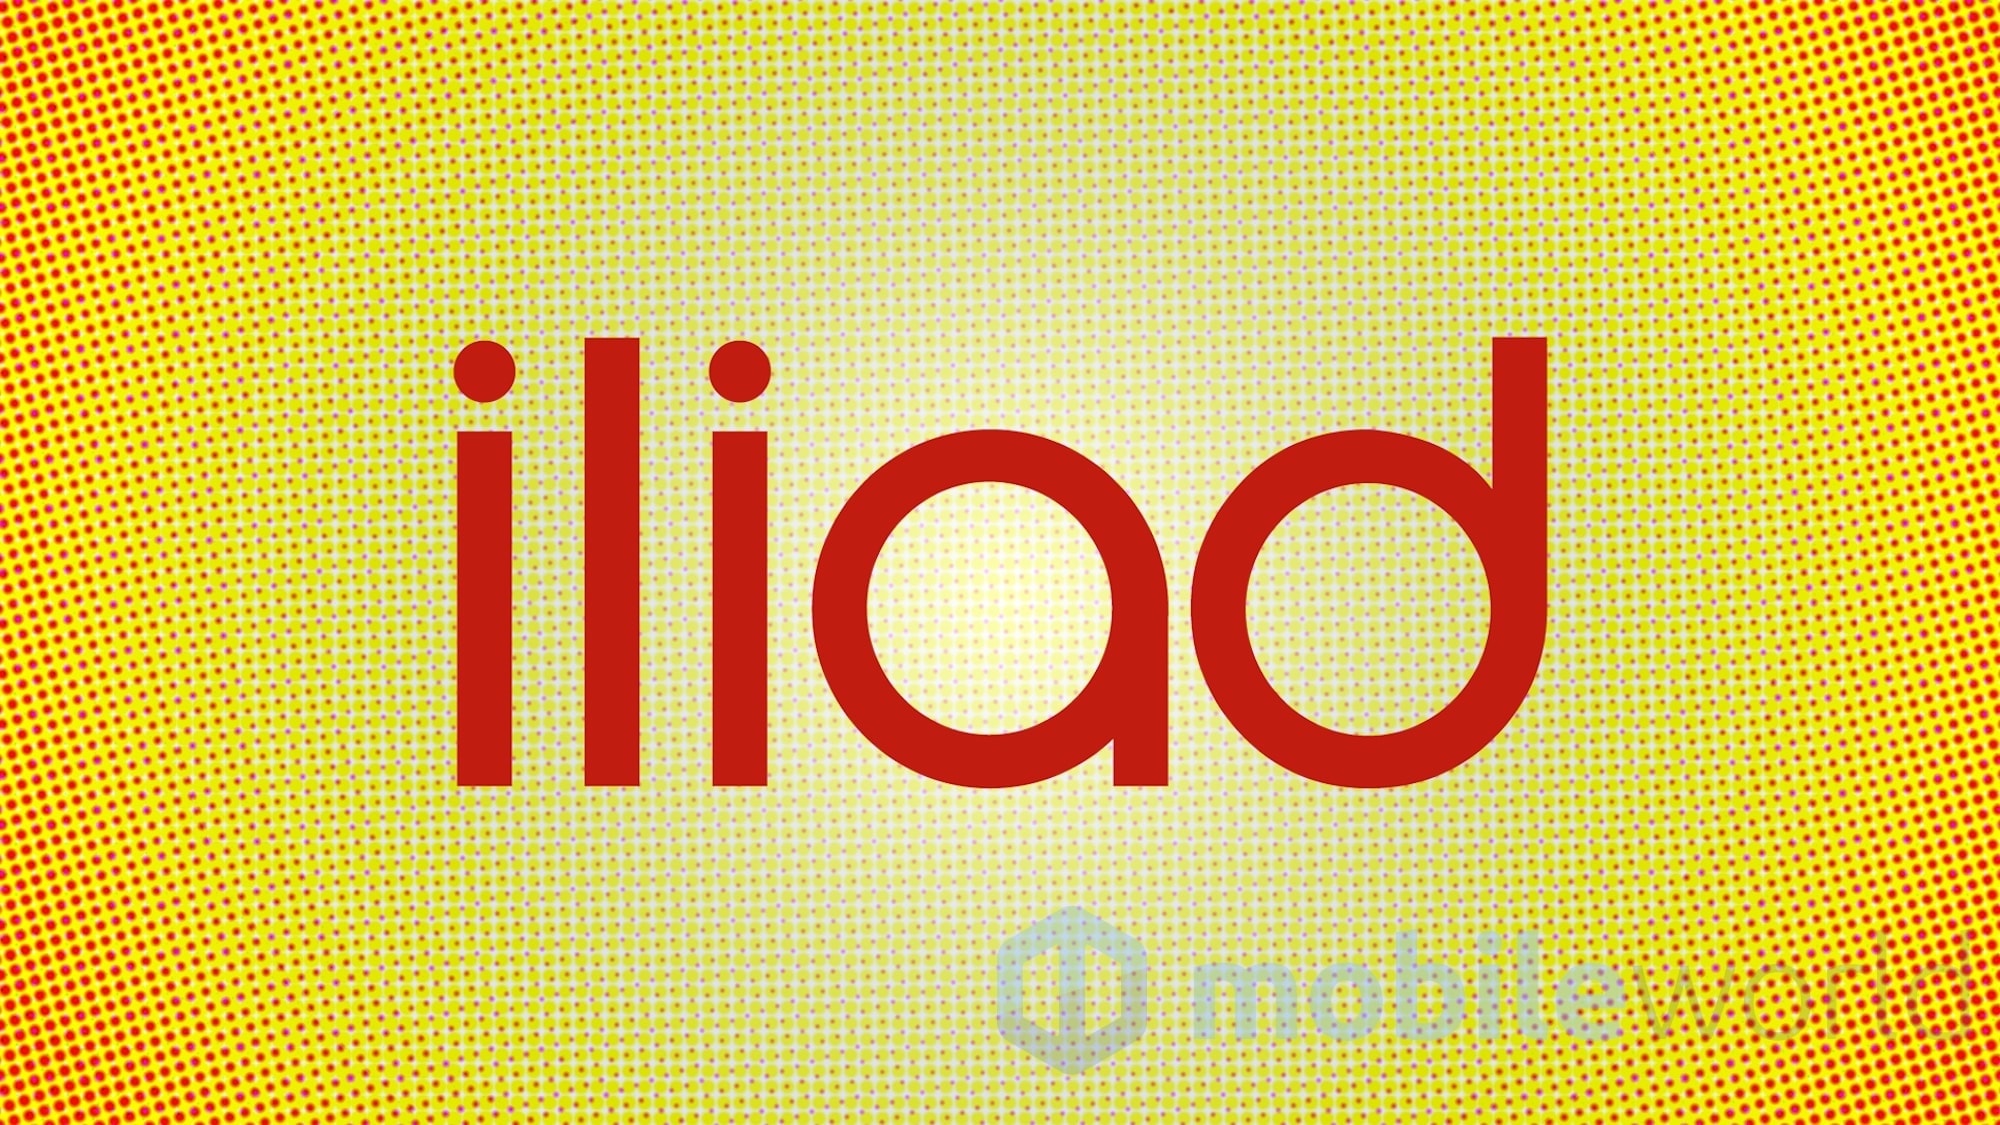 Mercato telefonia mobile: solo Iliad continua a crescere, al top anche nelle portabilità con i MVNO